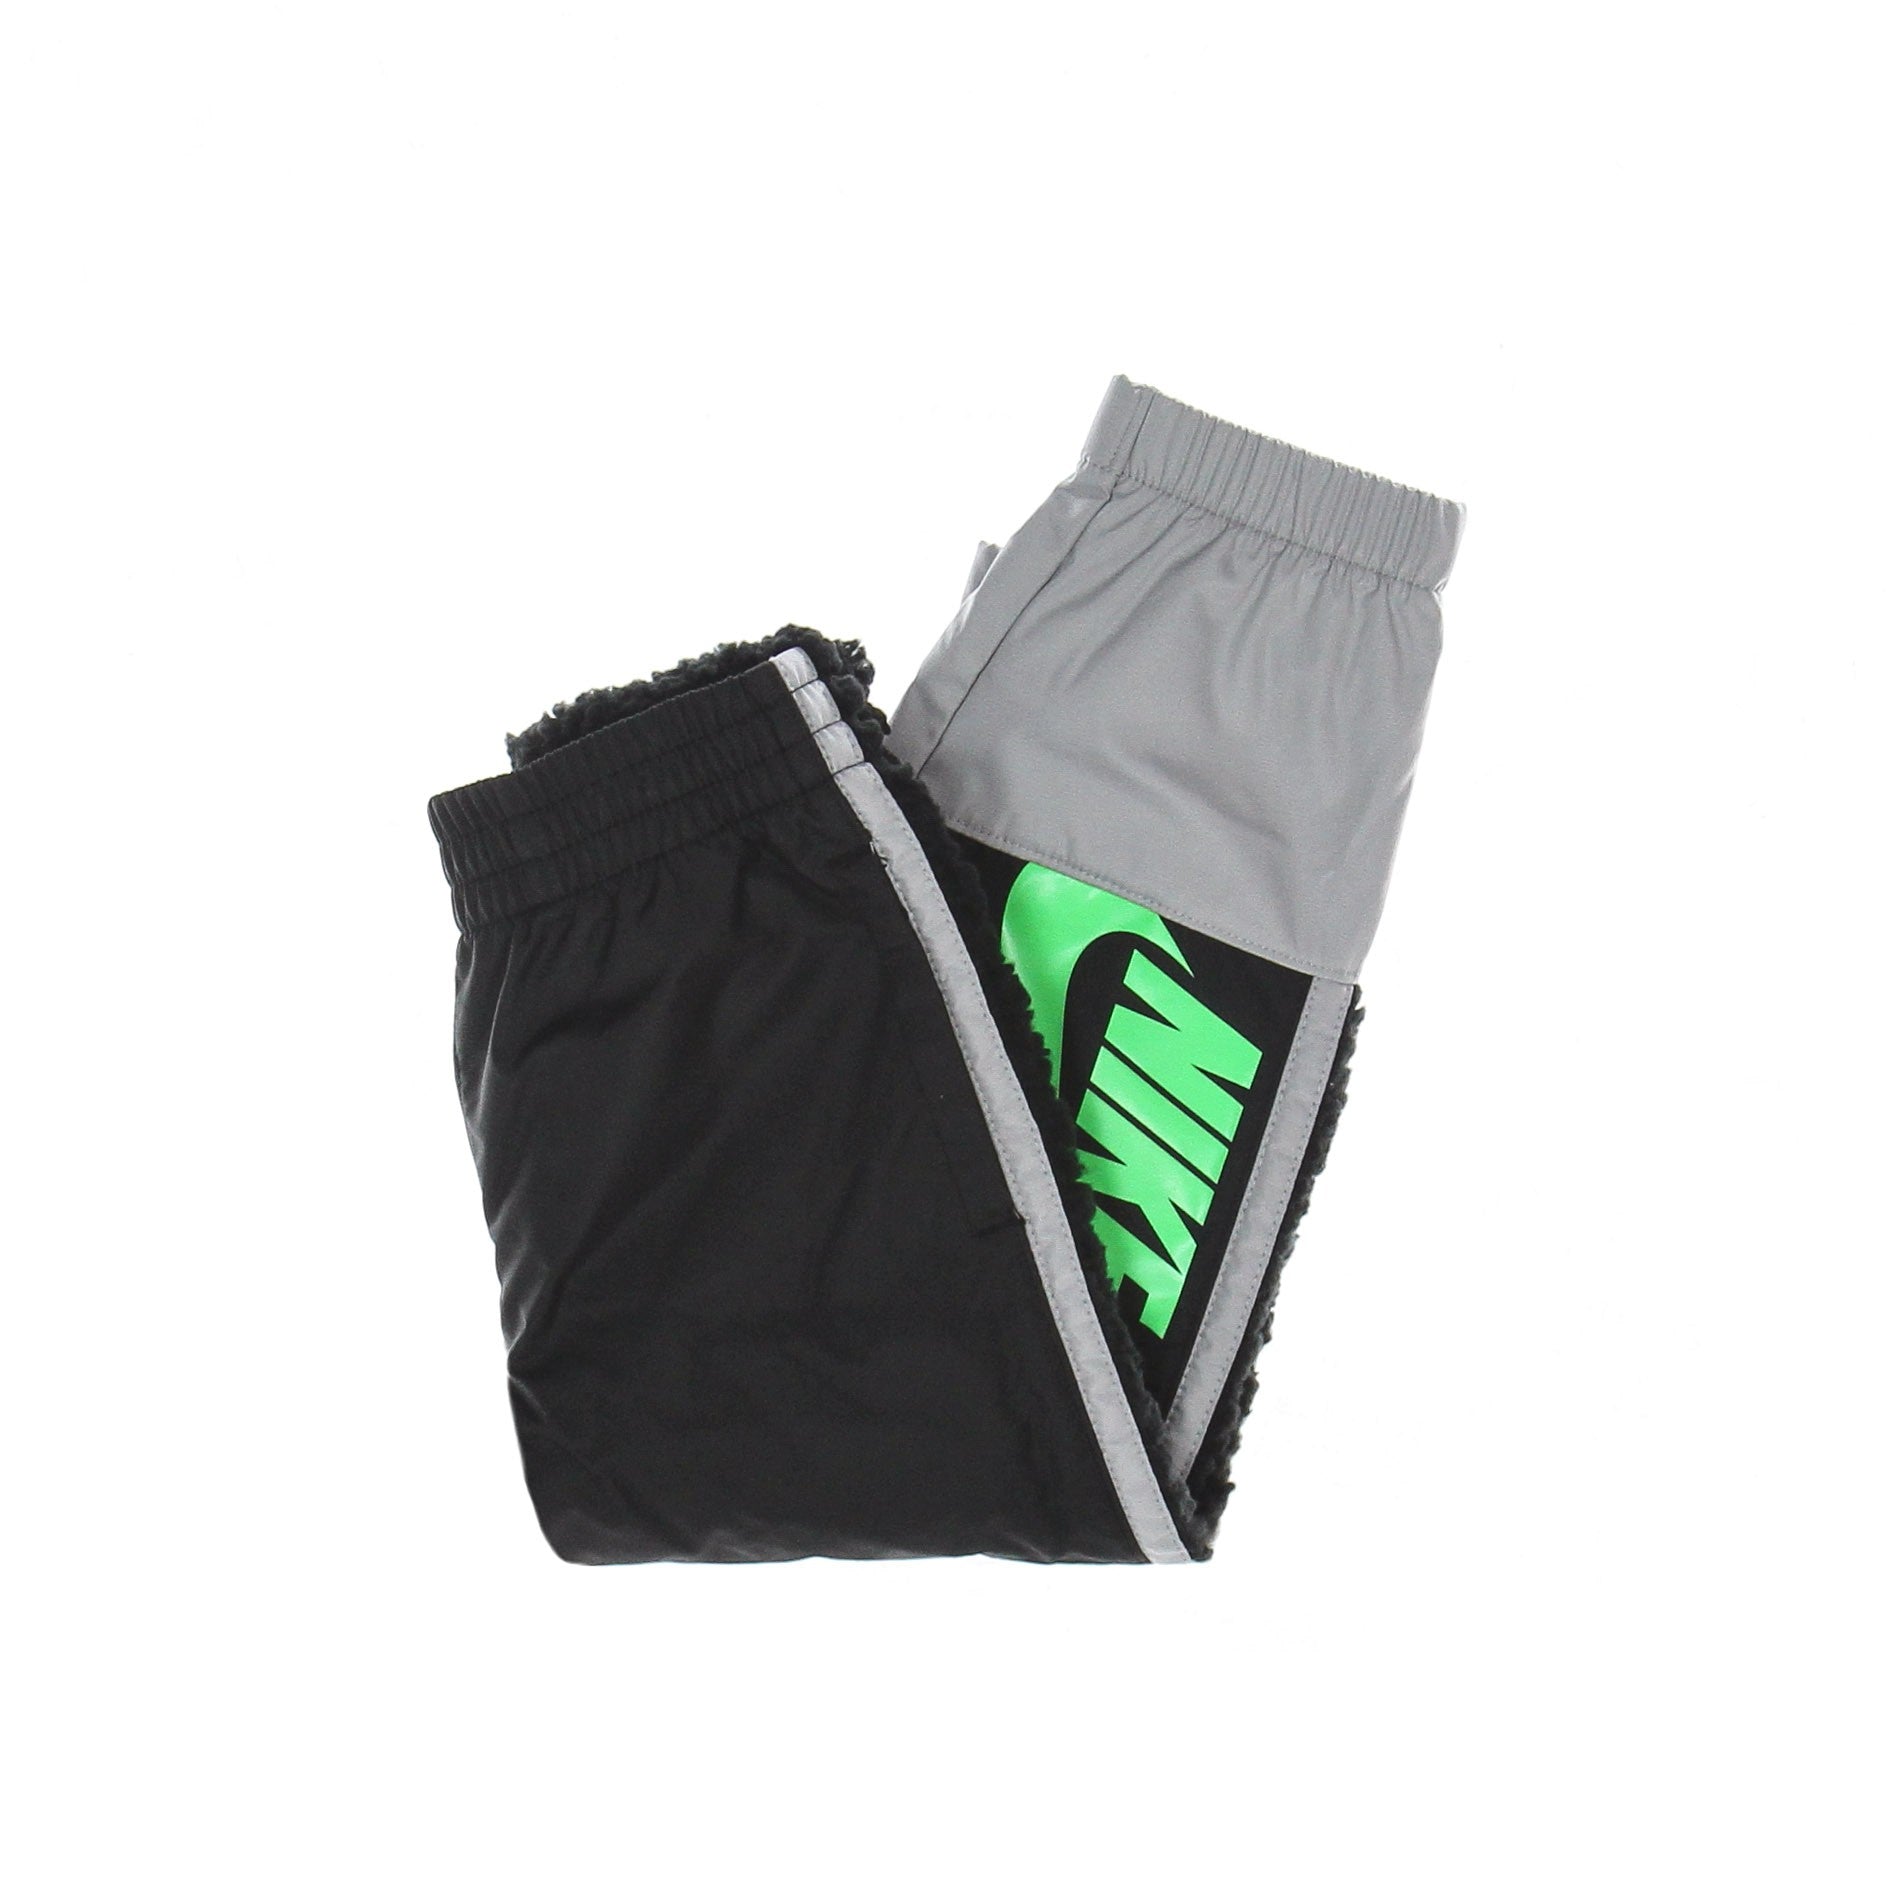 Nike, Pantalone Tuta Bambino Amplify Sherpa Pant, Black/light Smoke Grey